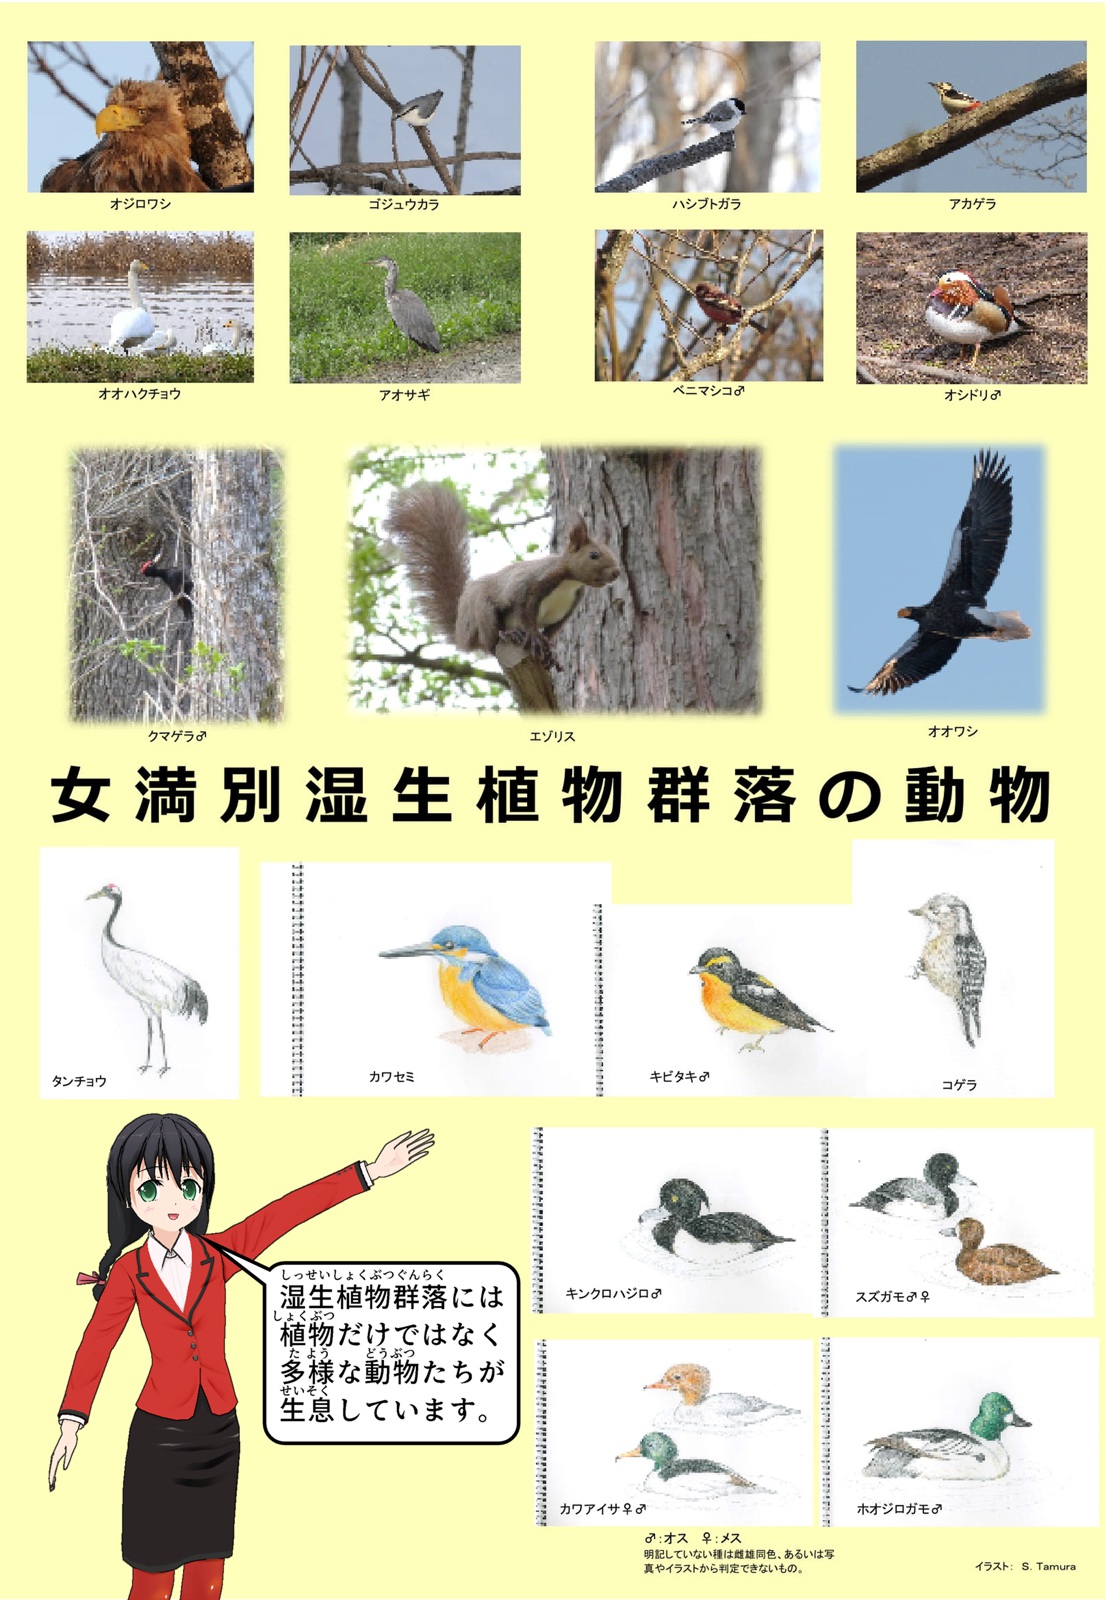 湿性植物群落に生息する多くの動物・鳥類をまとめて載せた写真について説明をしているイラスト